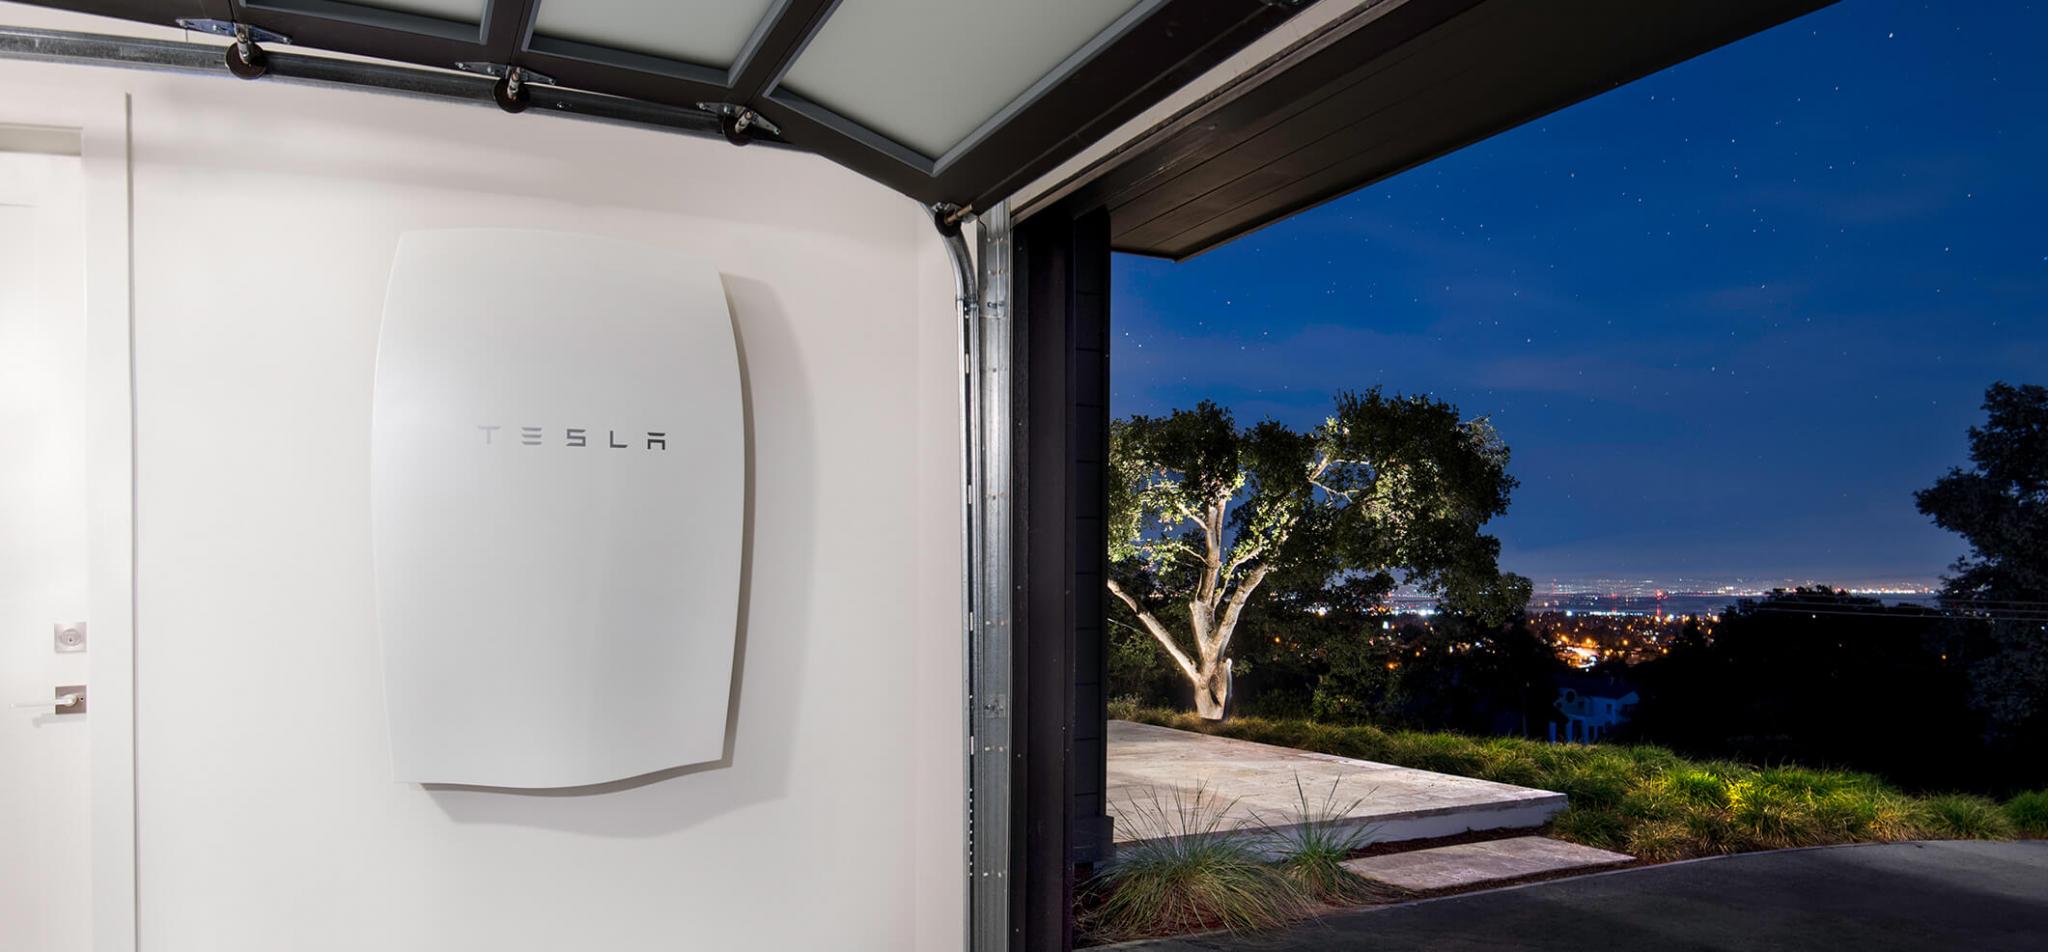 Top 5 phát minh của Tesla bên cạnh xe hơi chạy điện